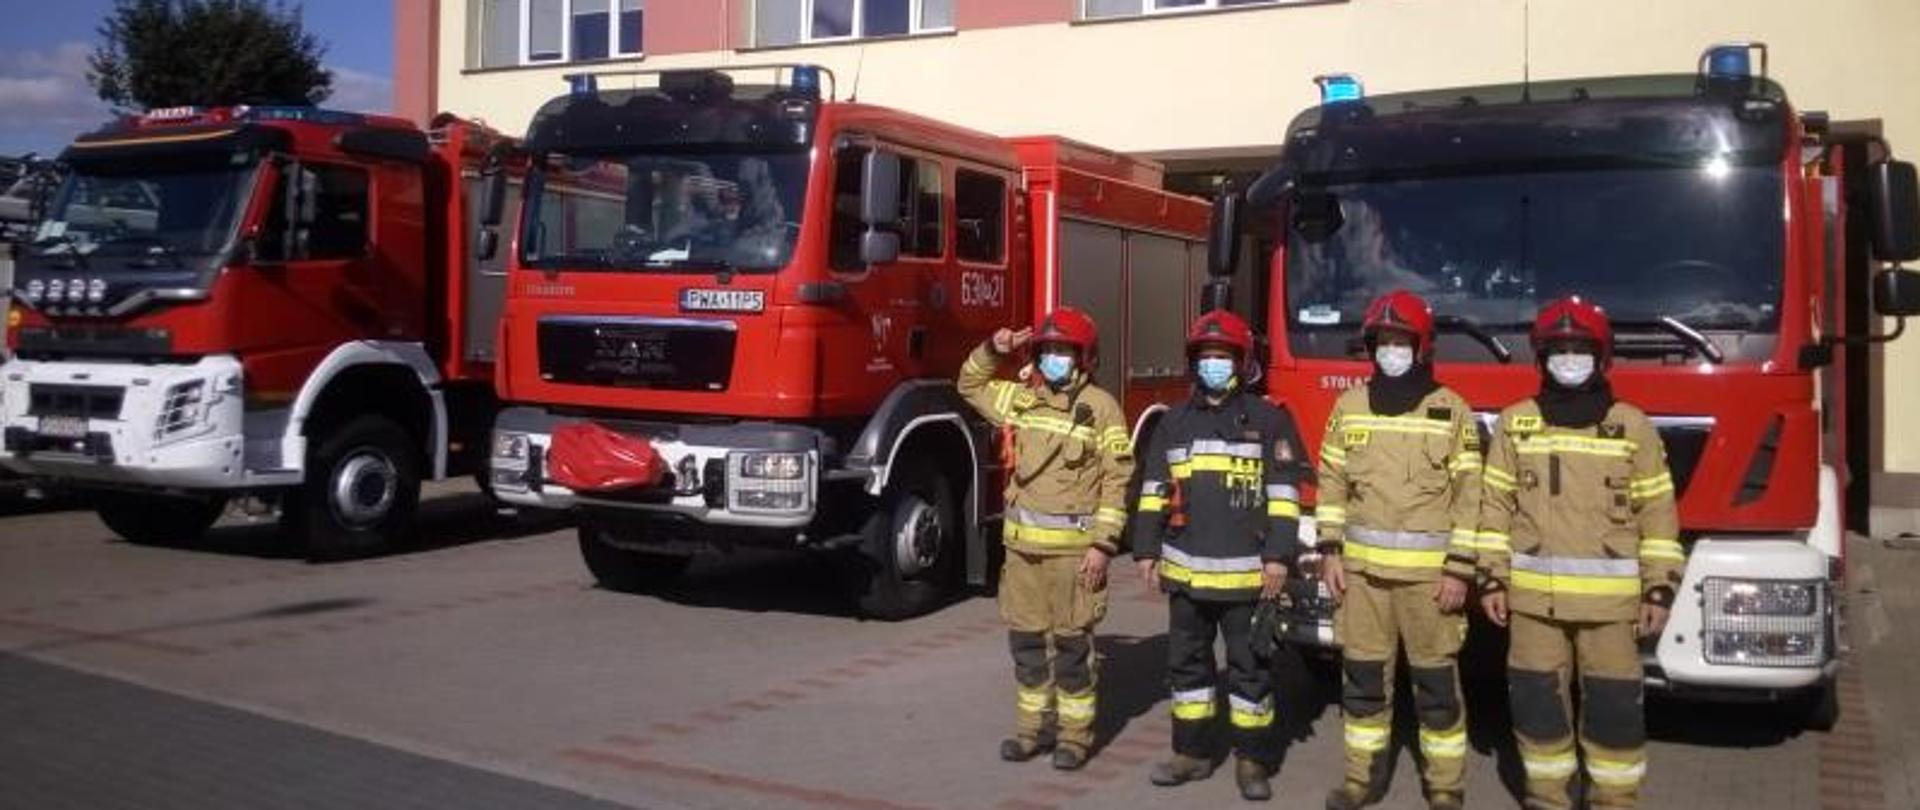 Na zdjęciu widać strażaków w szyku oddających honory oraz wozy strażackie przed budynkiem Komendy Powiatowej PSP w Wągrowcu 